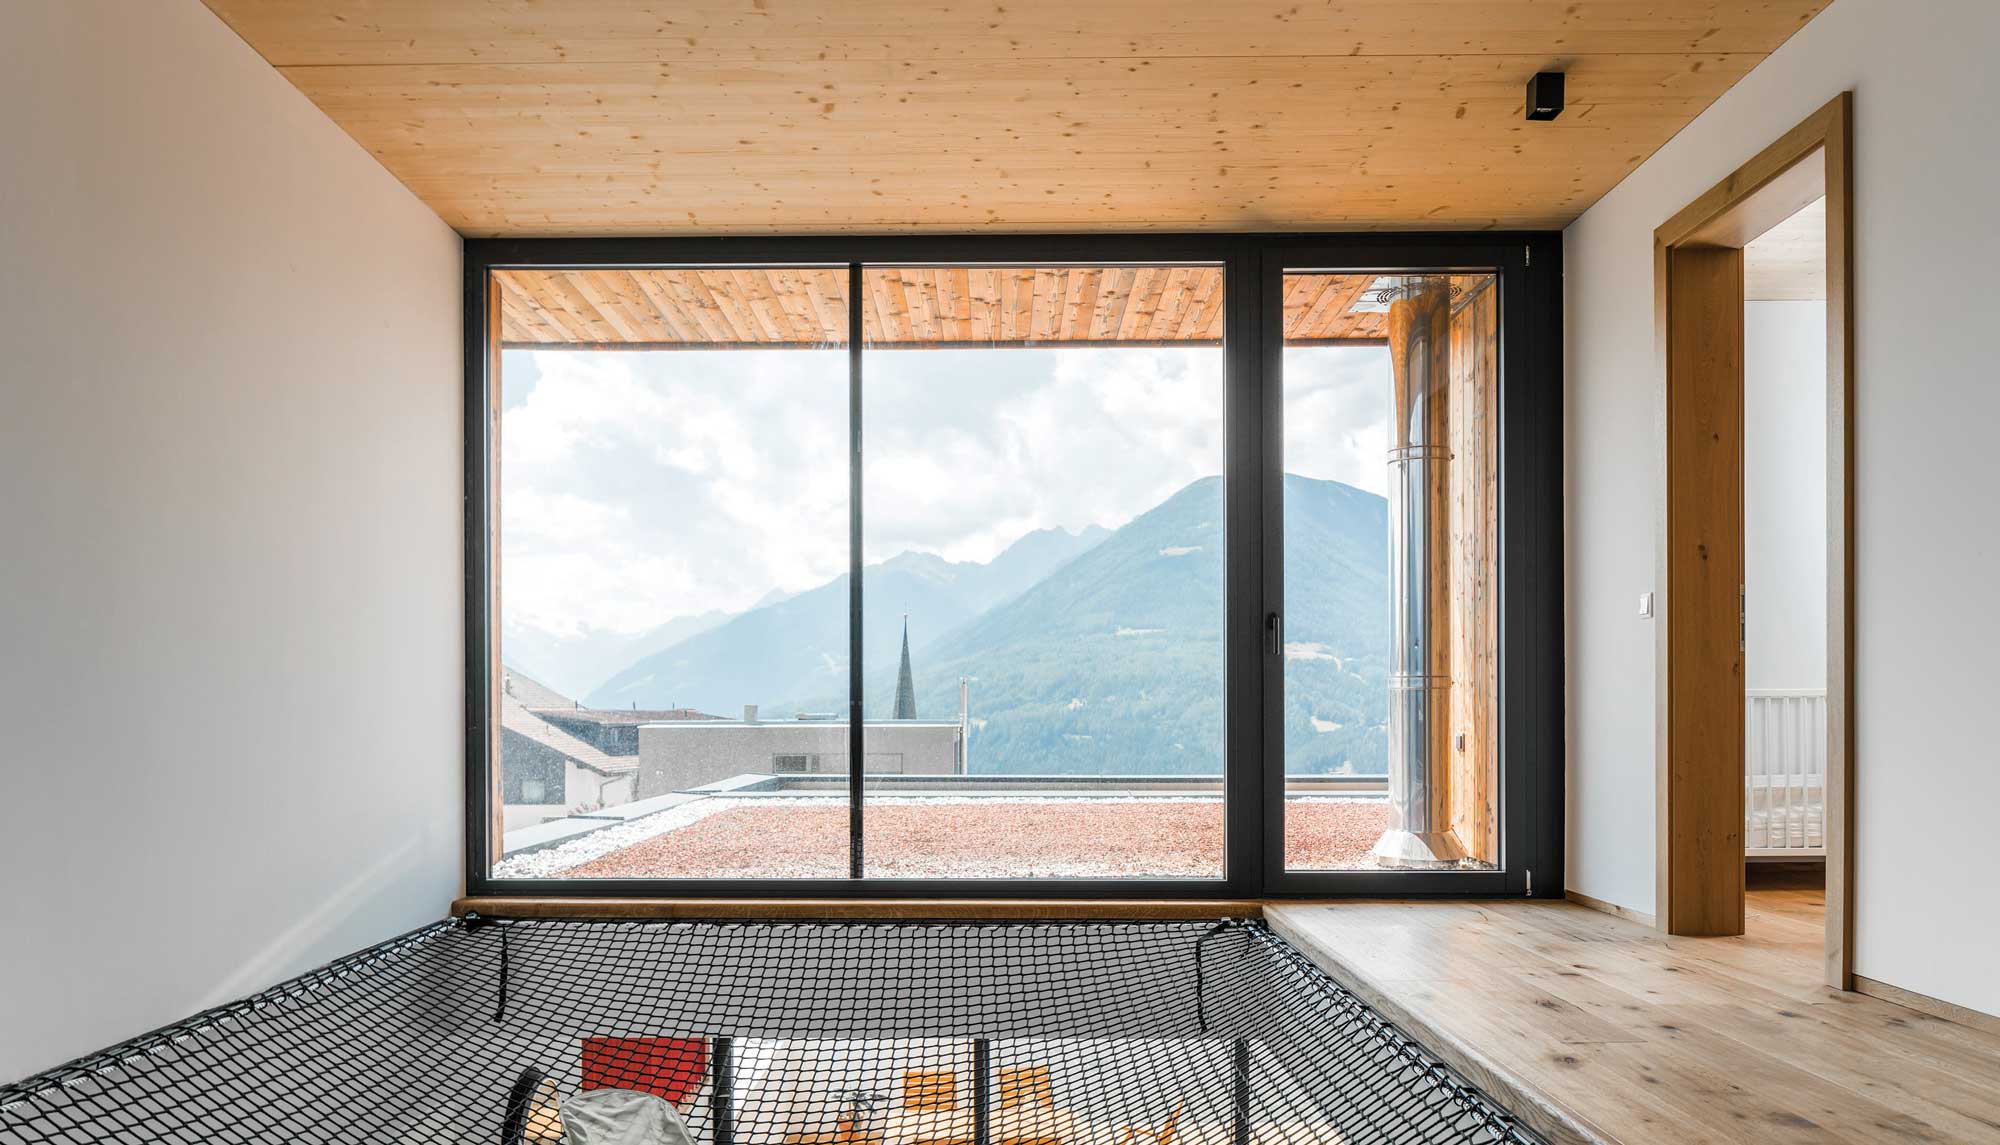 Neubau Innsbruck Land Ausblick vom ersten Stock | Architektenhäuser | Inspiration | Tirol, Österreich